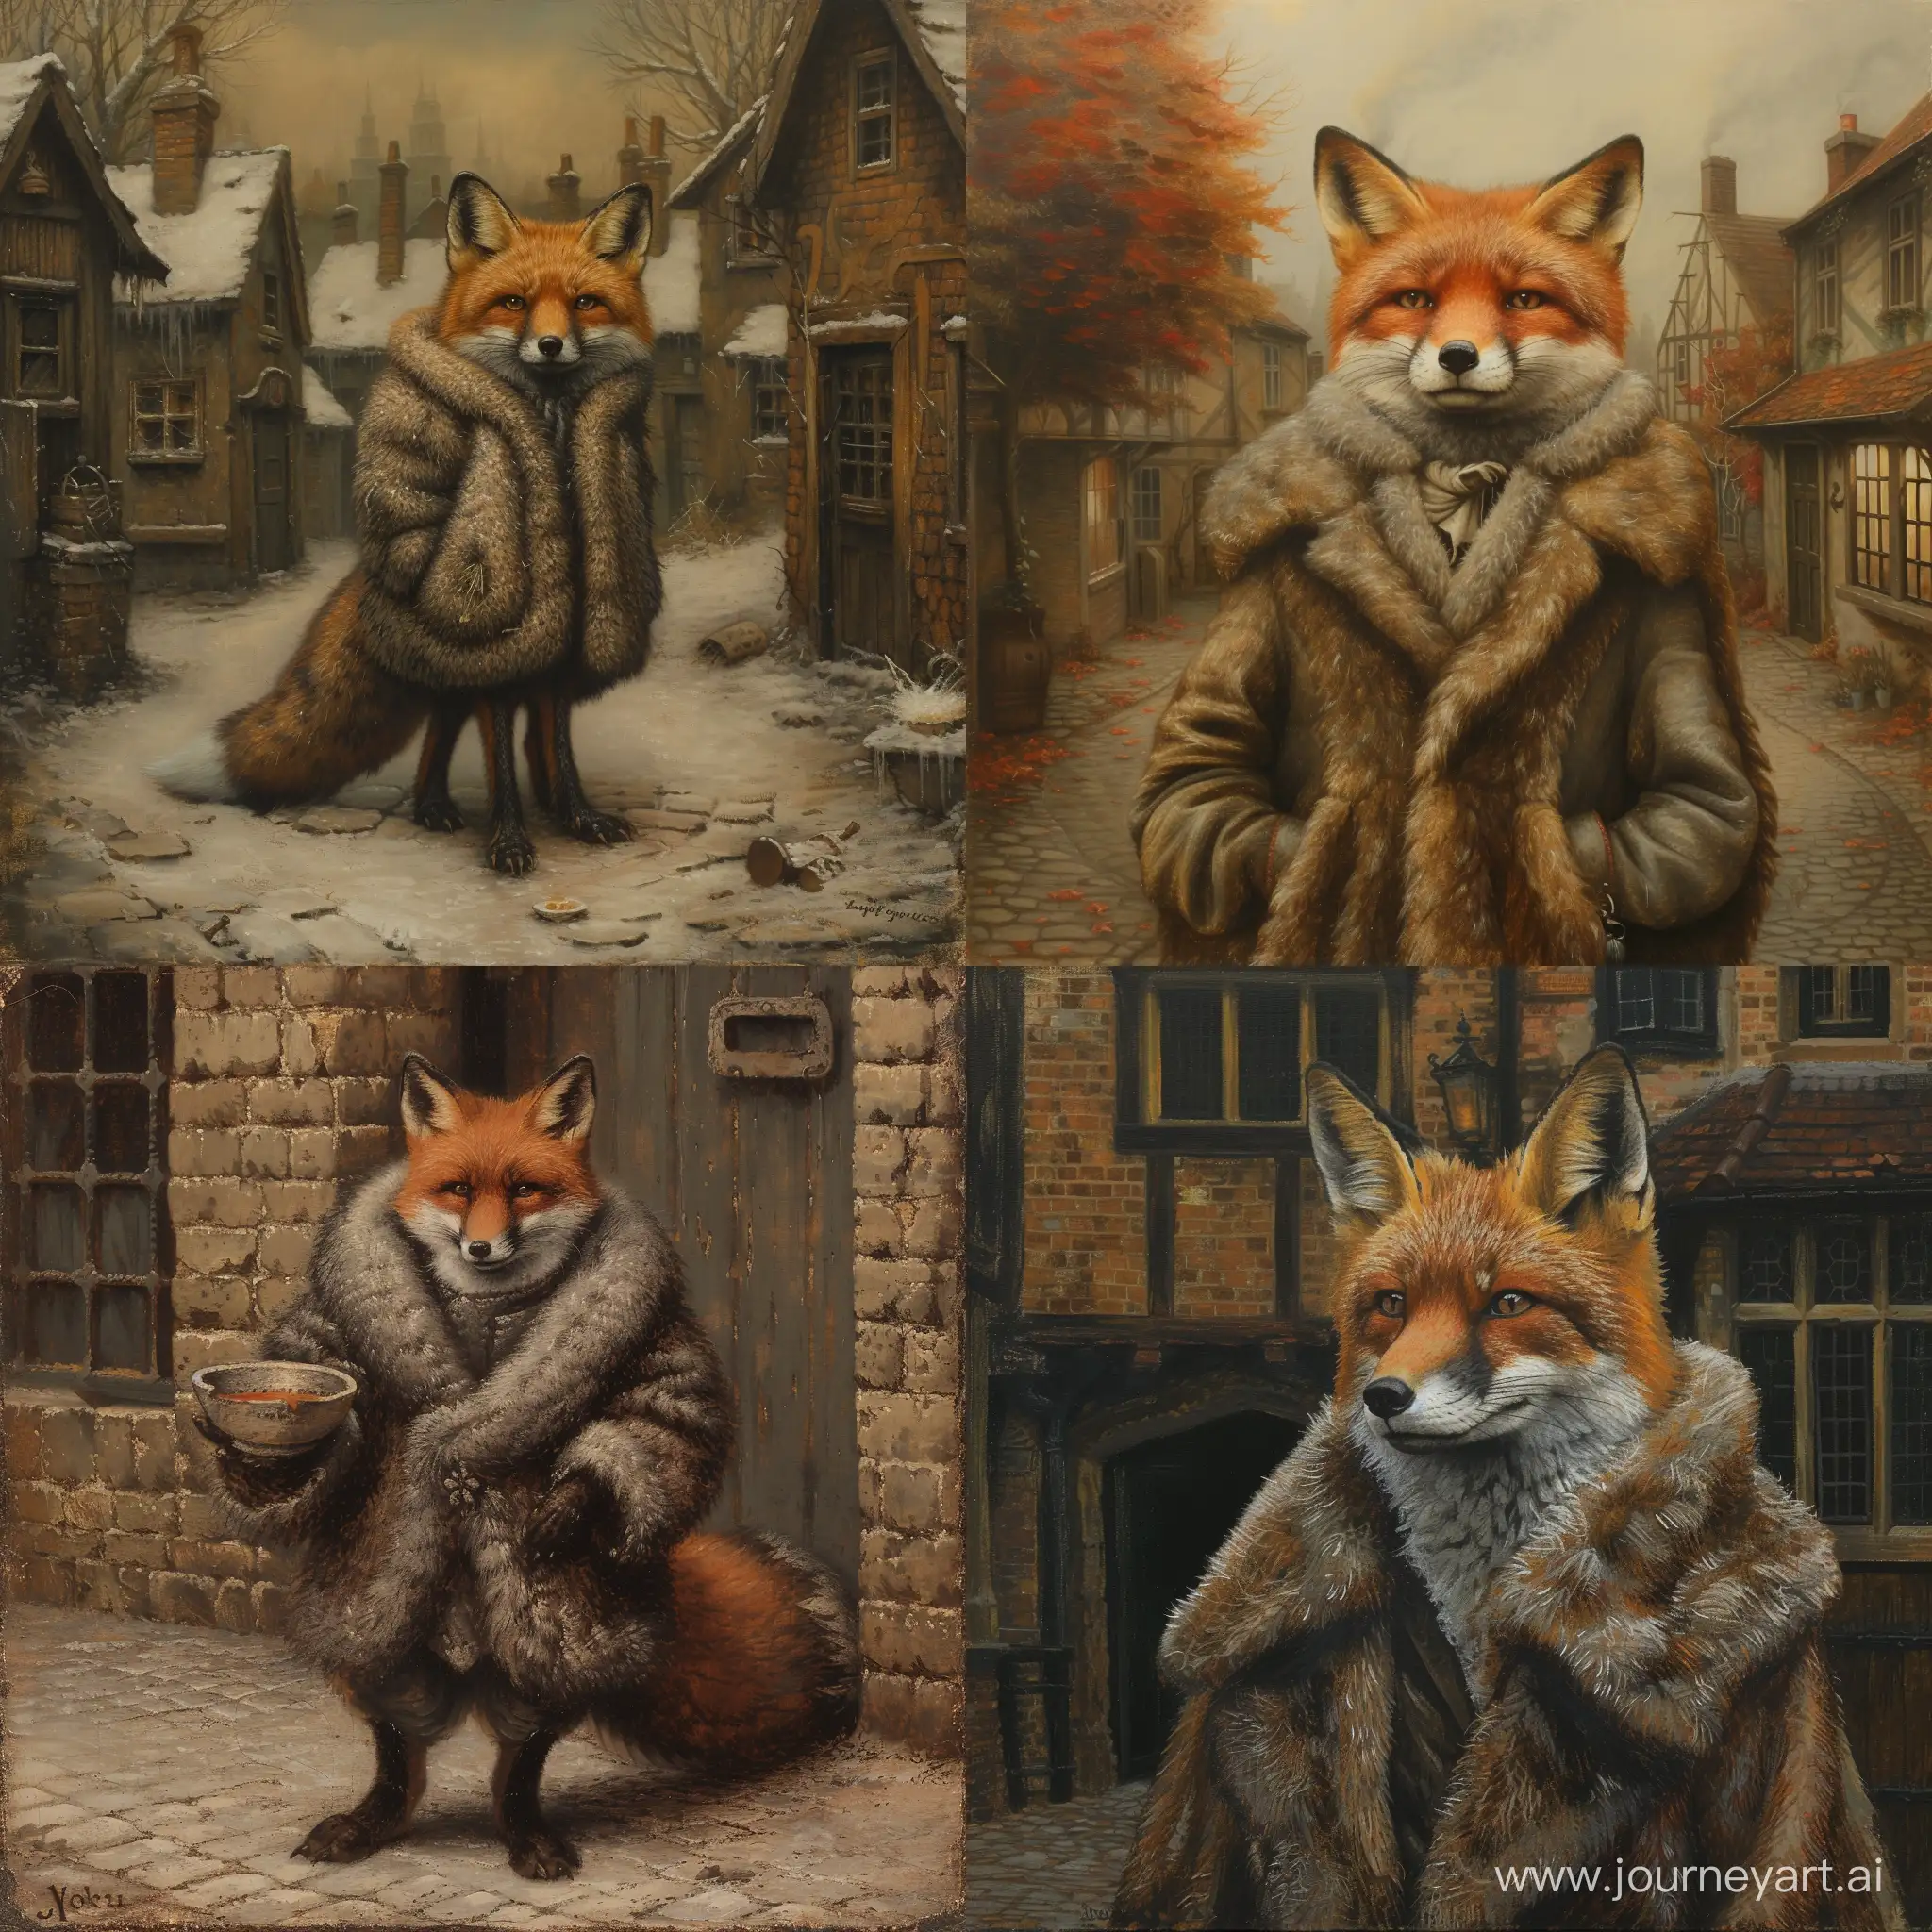 Benevolent-Fox-in-Fur-Coat-Seeks-Alms-in-Hamlets